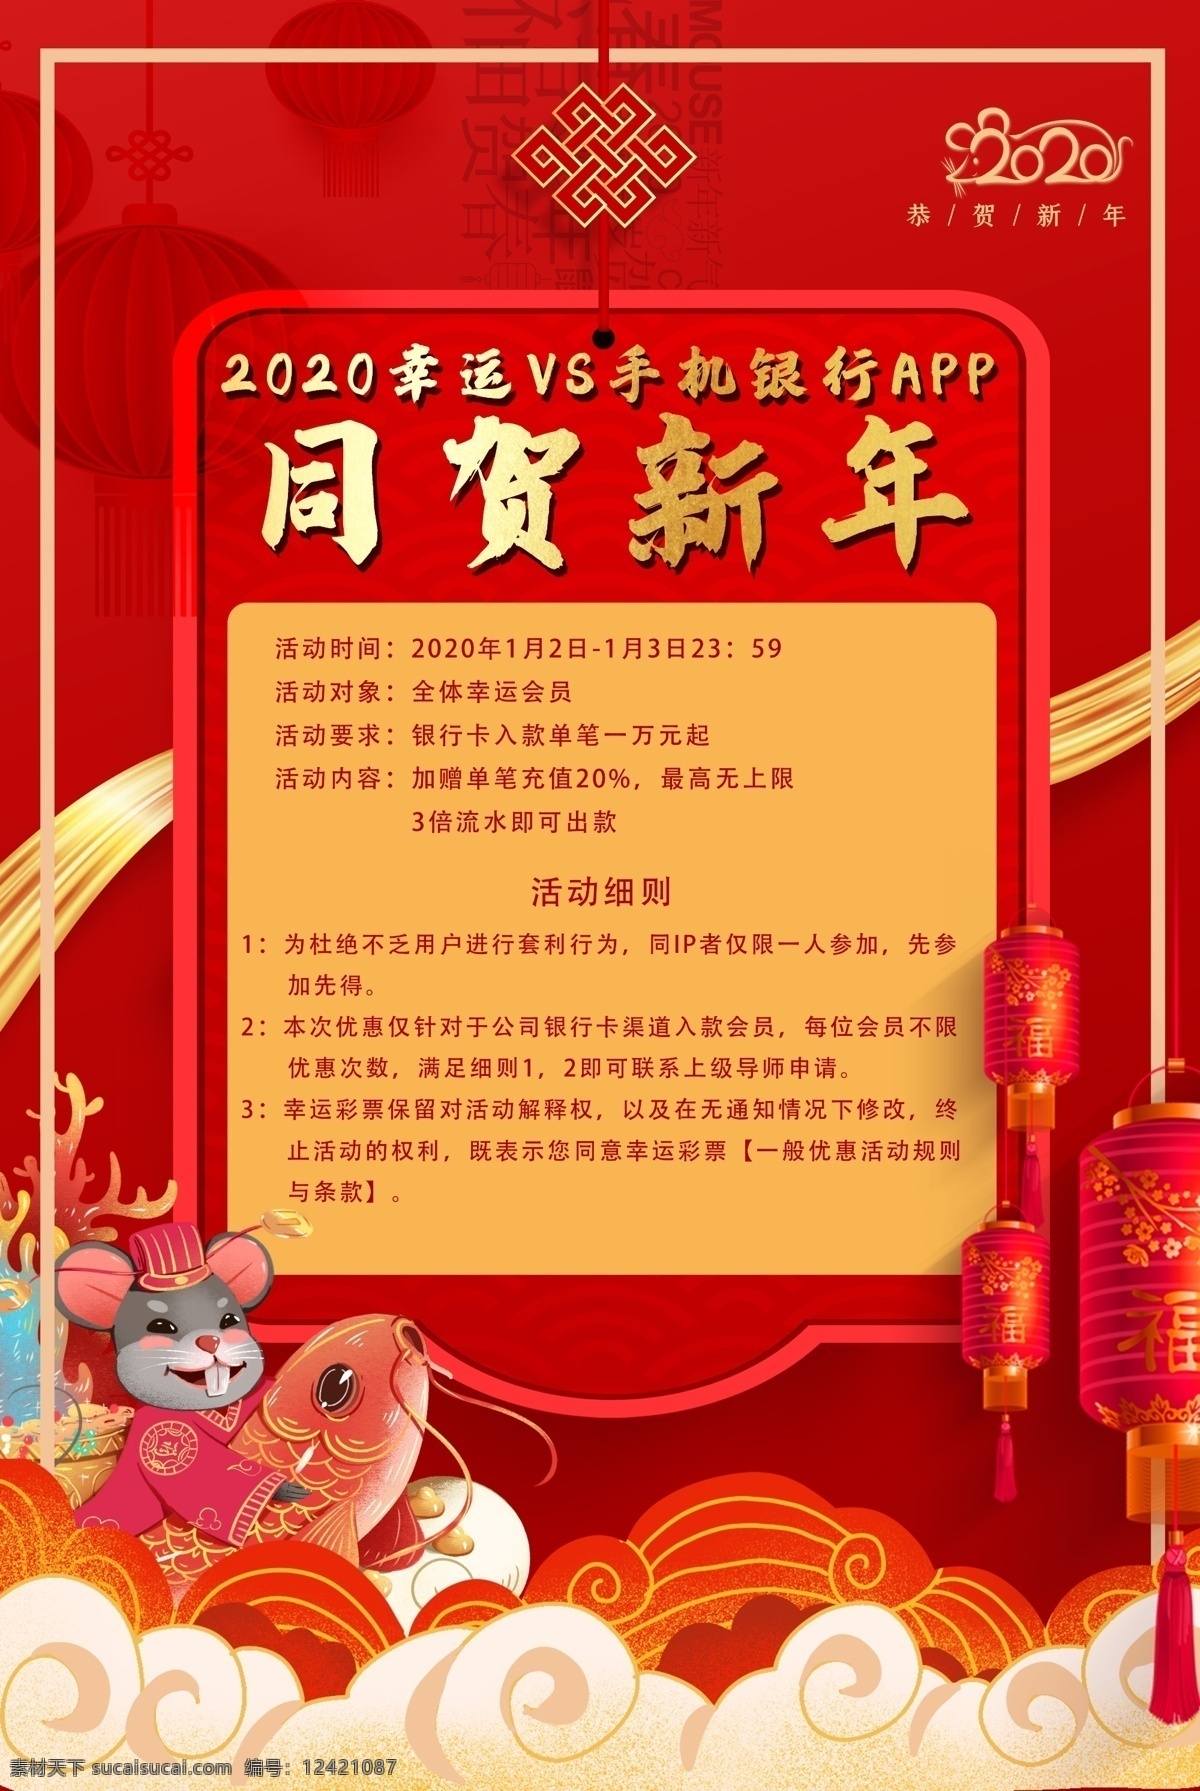 鼠年 春节 新年 鼠年海报 鼠年素材 春节素材 红色背景 2020鼠年 2020年 鼠年春节 欢迎回家 鼠年贺卡 鼠年插画 鼠年大吉